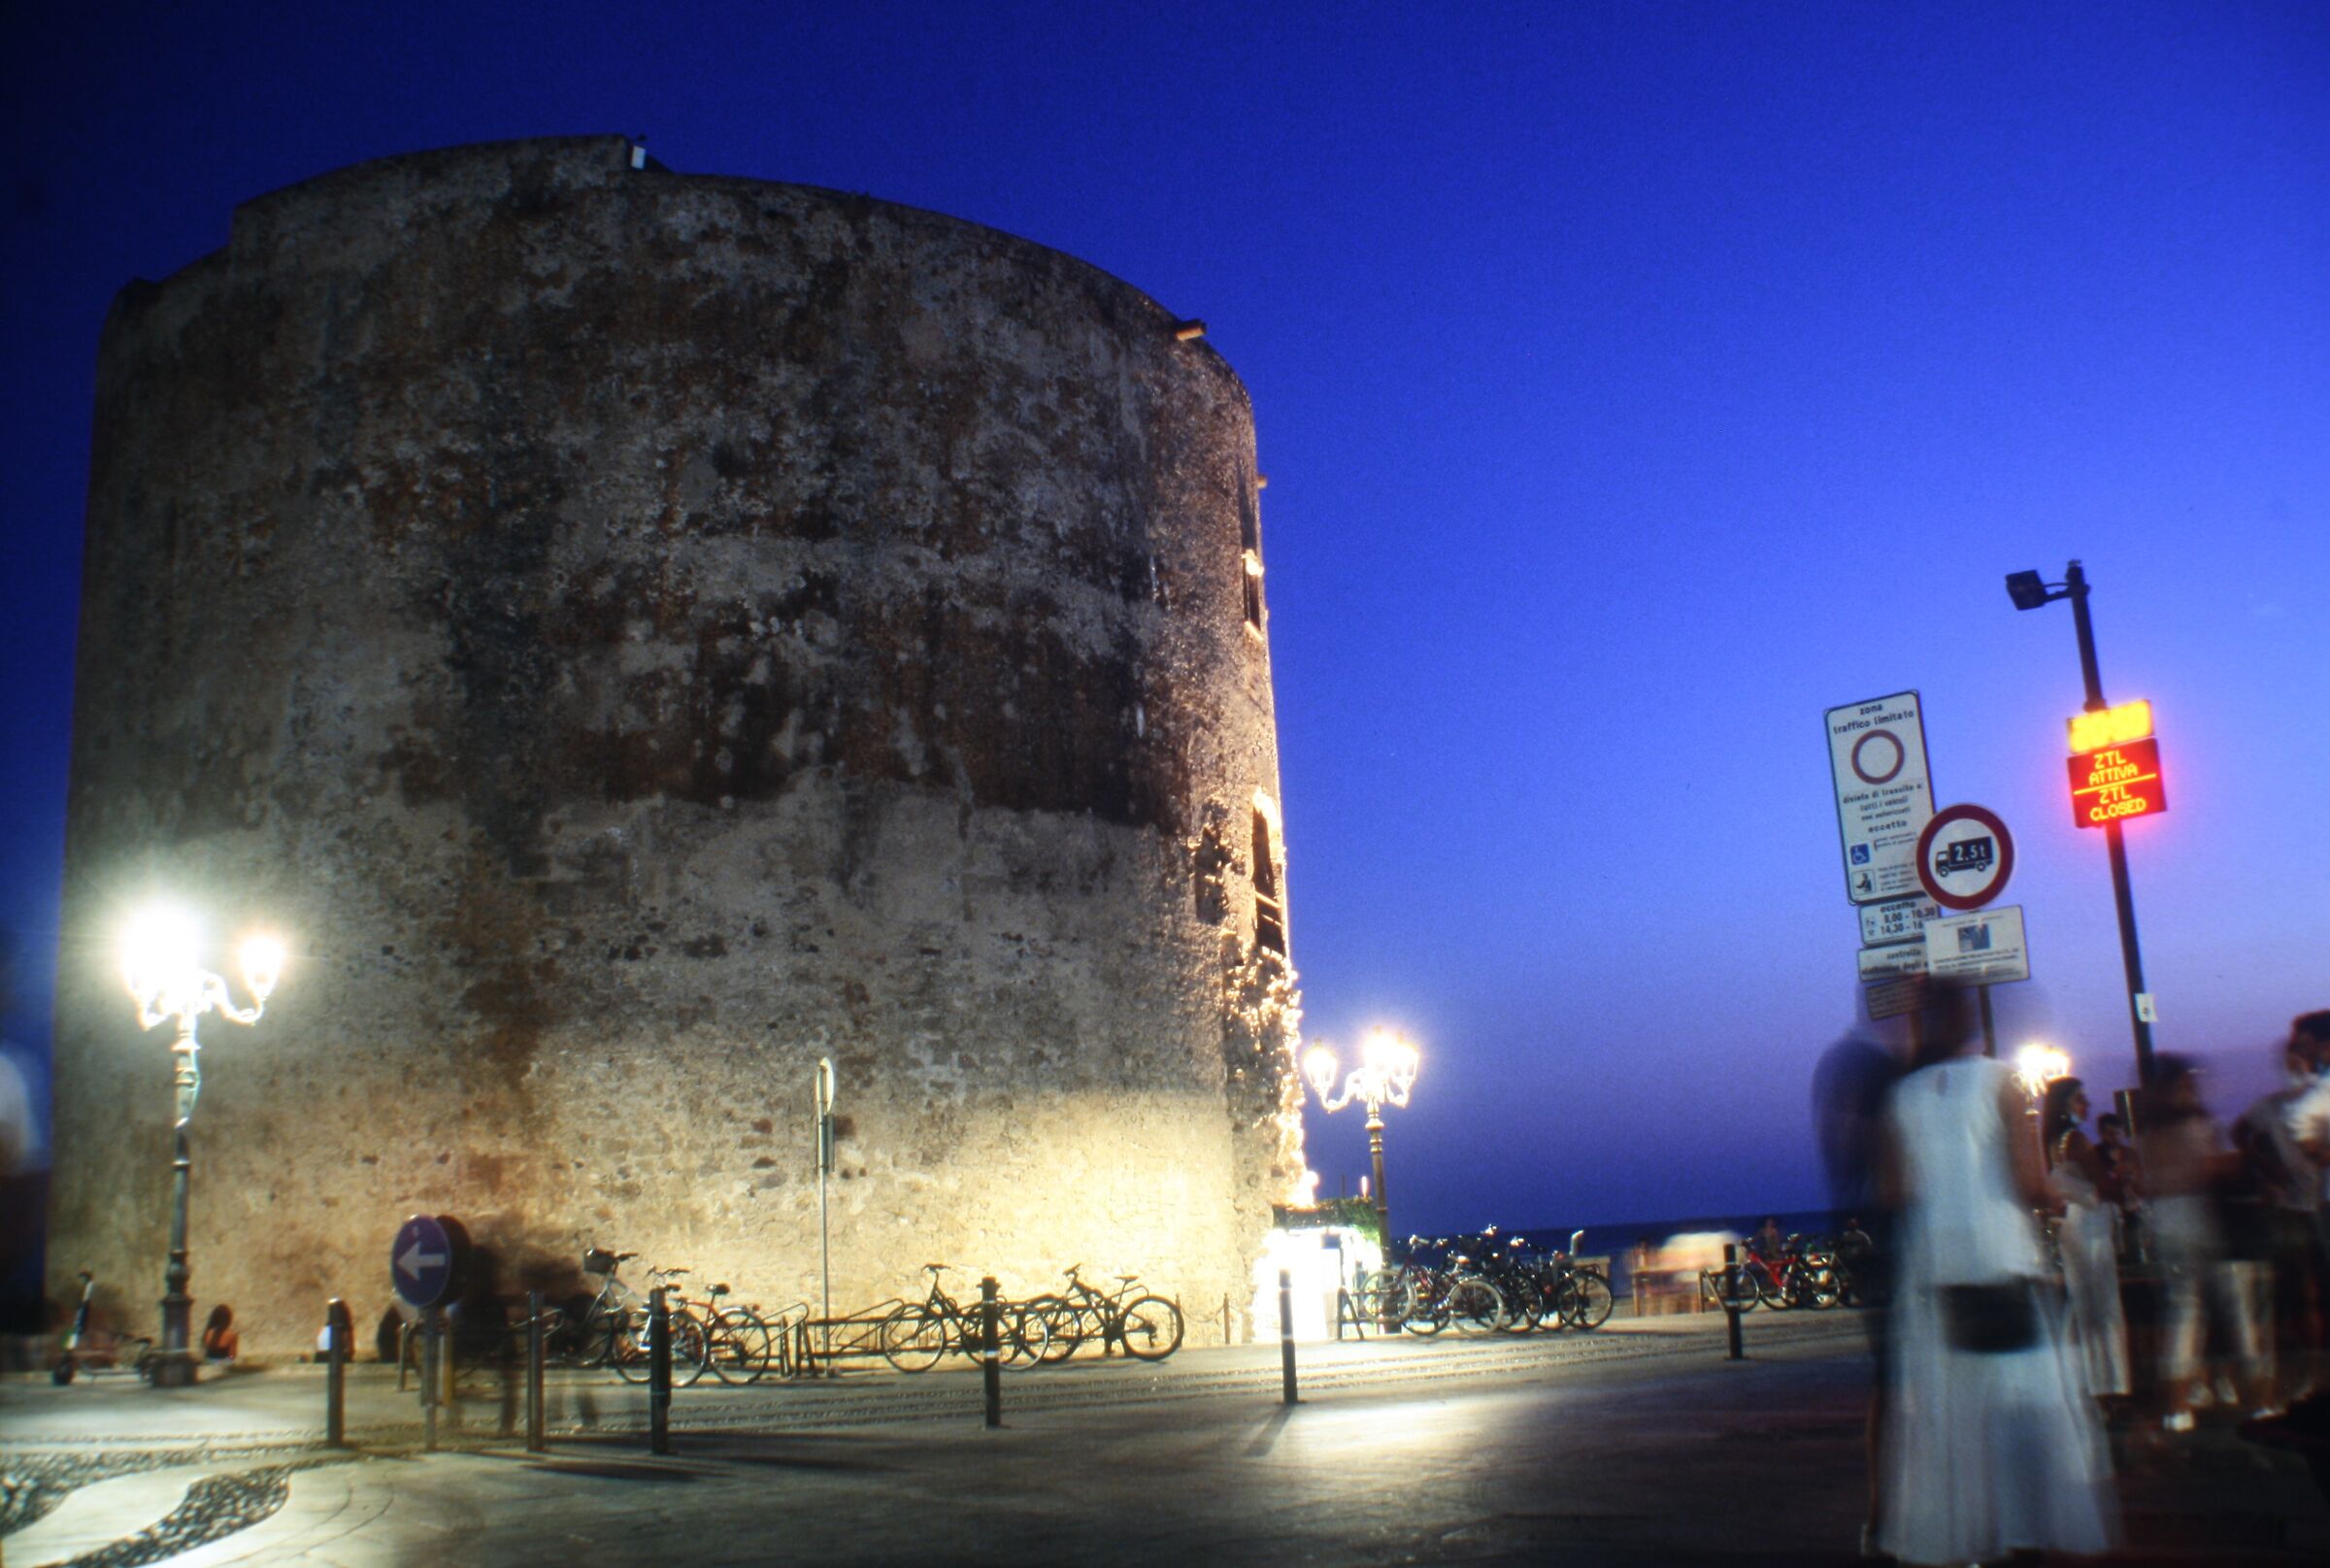 Tower of Alghero...